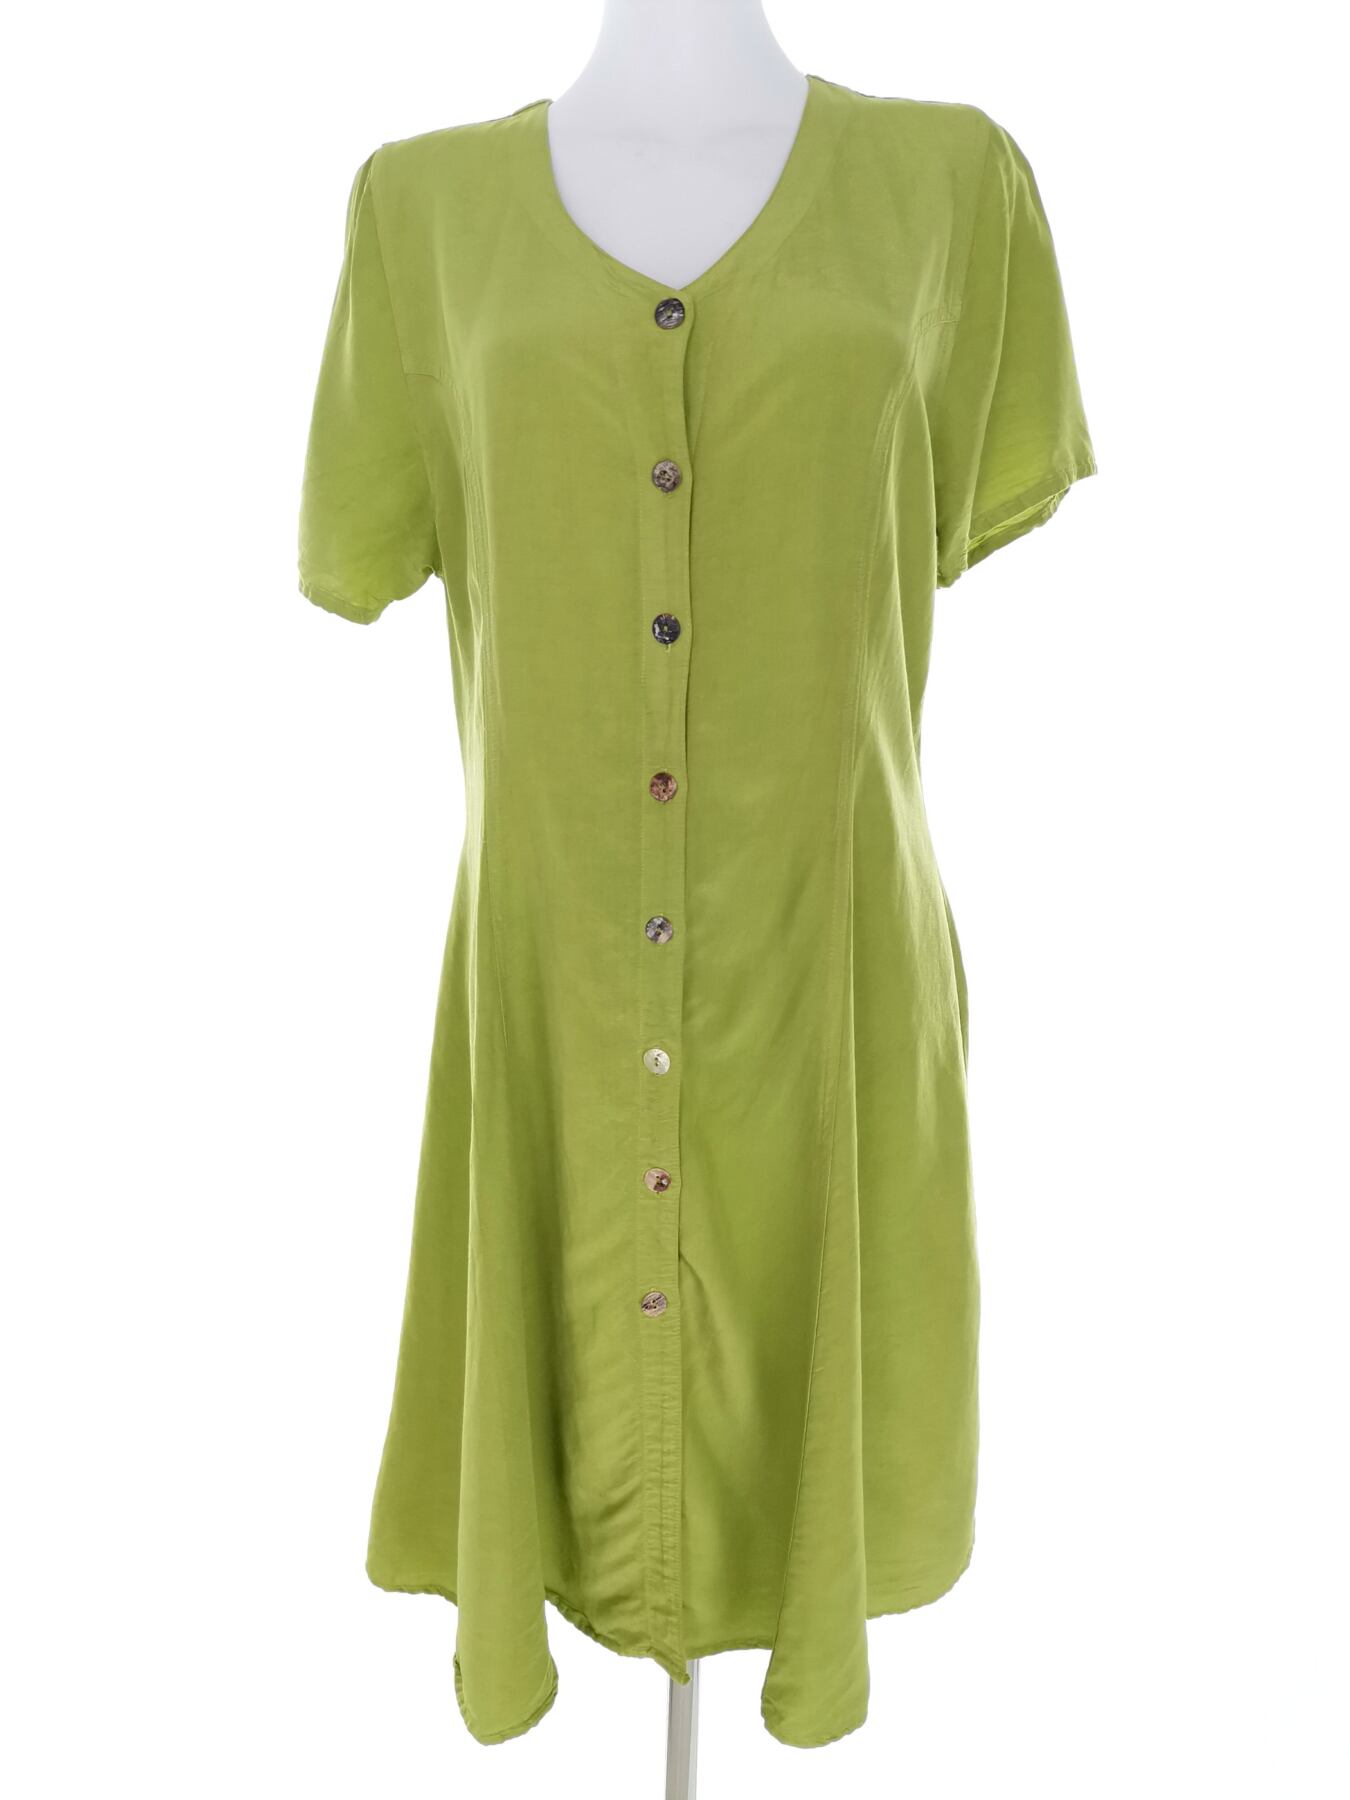 Arrivee Rozmiar 1 (38) Kolor Zielony W serek Sukienka Koszulowa Krótki rękaw Midi Materiał Wiskoza 100%